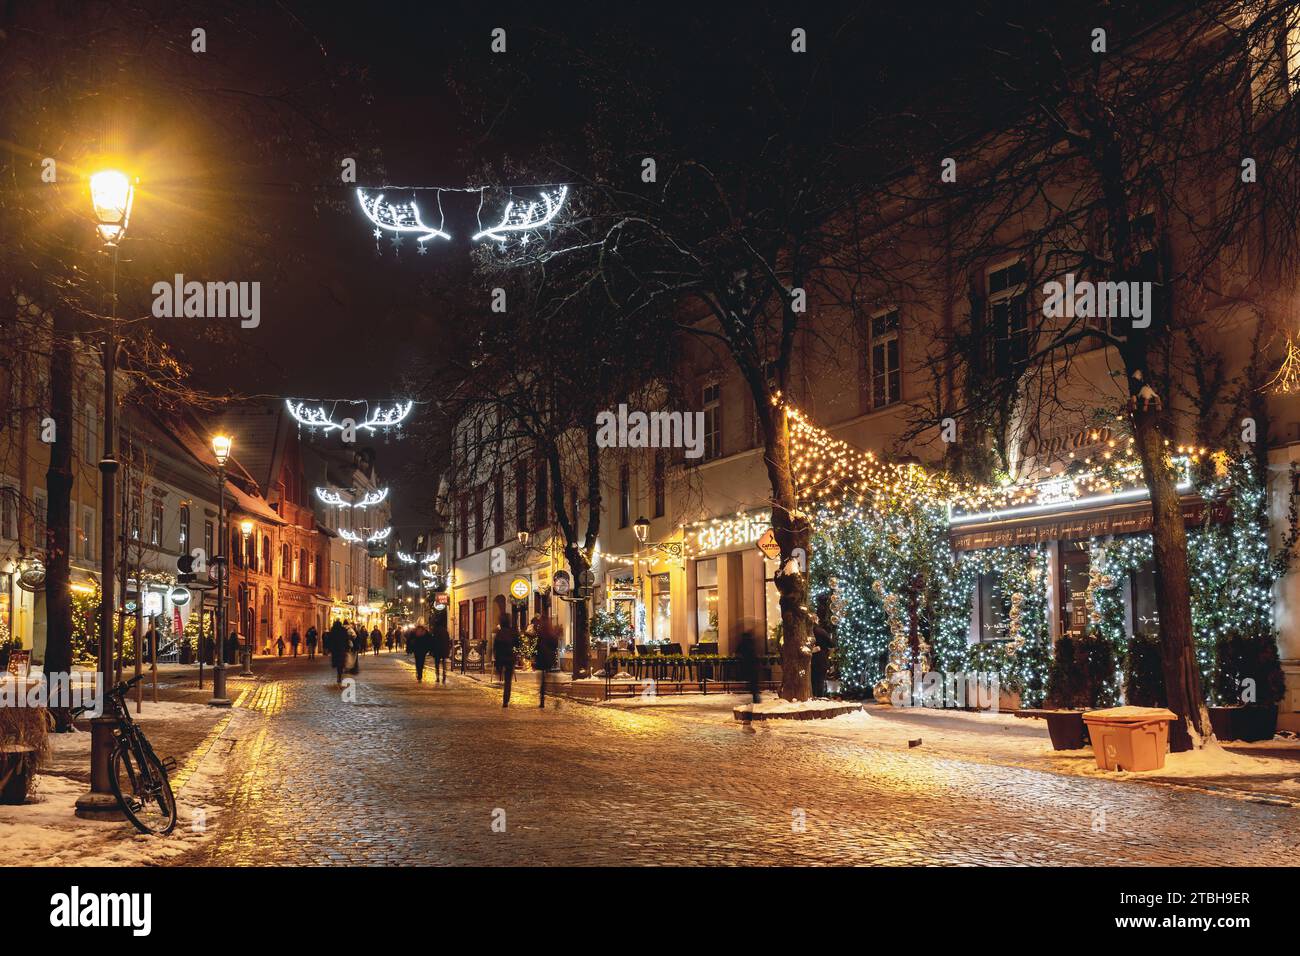 Wunderschöne gemütliche Weihnachtsdekoration, Kranz, Girlanden und Lichter in der Altstadt von Vilnius, Hauptstadt von Litauen, Europa, bei Nacht mit Straßenlaternen, Fahrrad Stockfoto